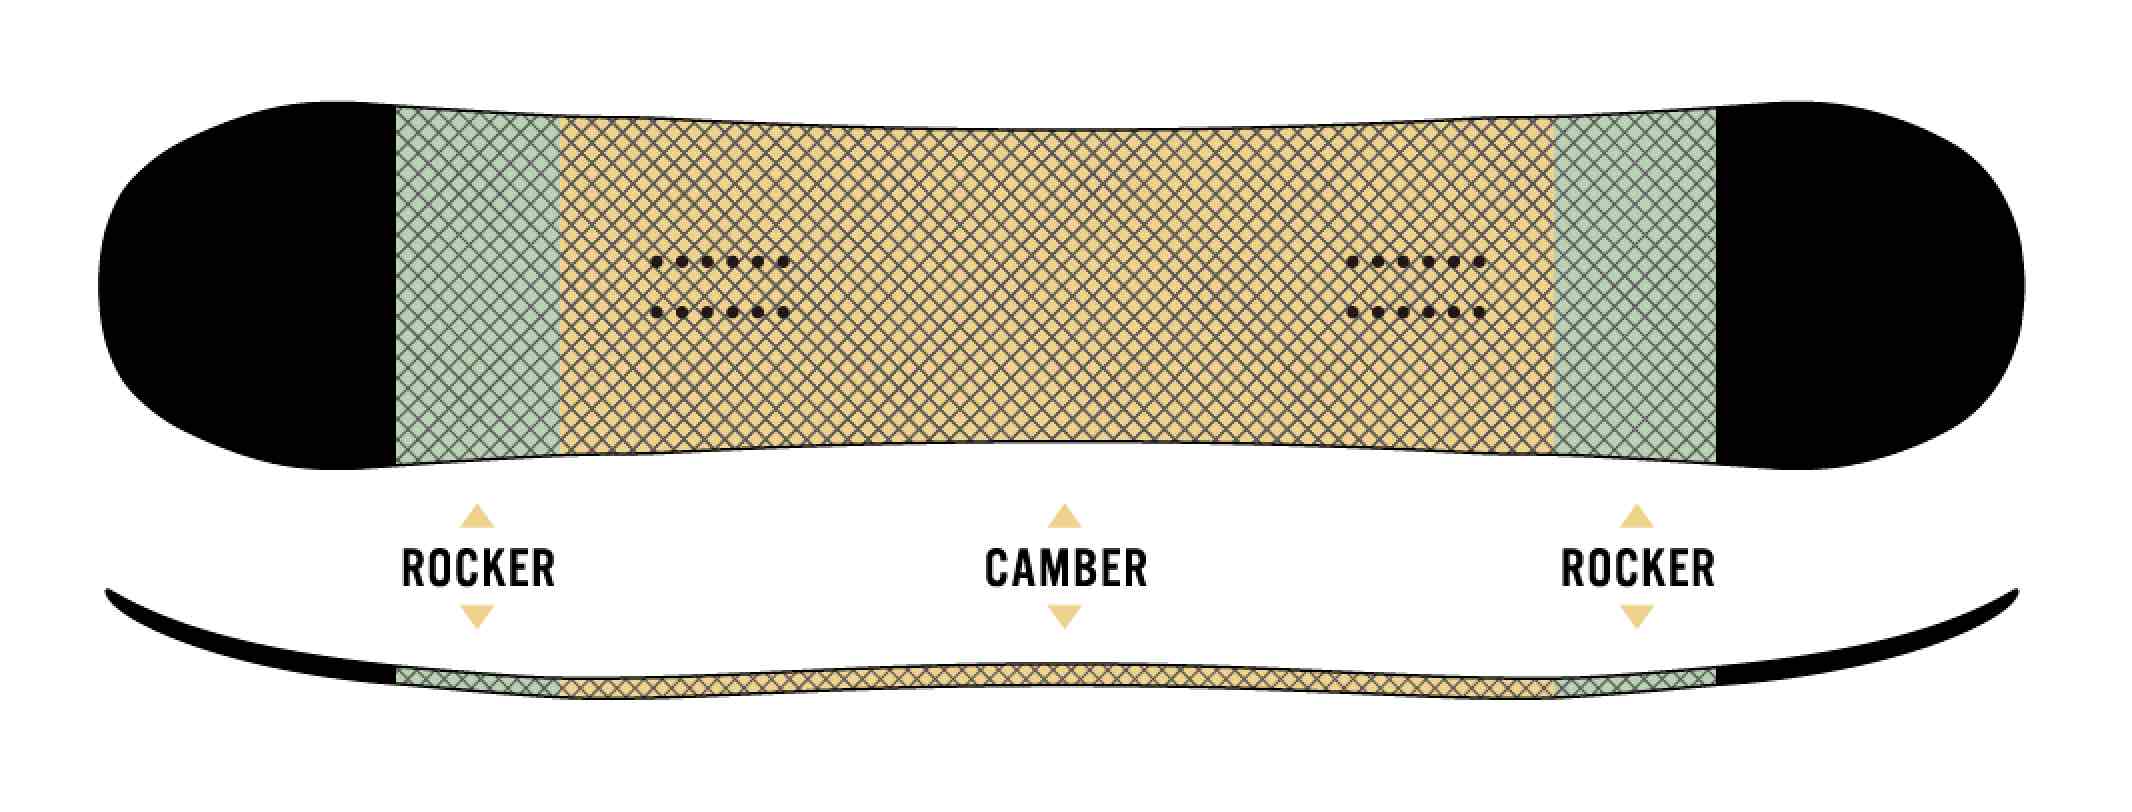 ボードのセンター部分はキャンバーで、ノーズとテールに少しだけロッカーを取り入れたCAMROCK。キャンバーが得意とするキレのあるエッジングと高い反発力、そしてロッカー特有の取り回しのよさを併せ持っている